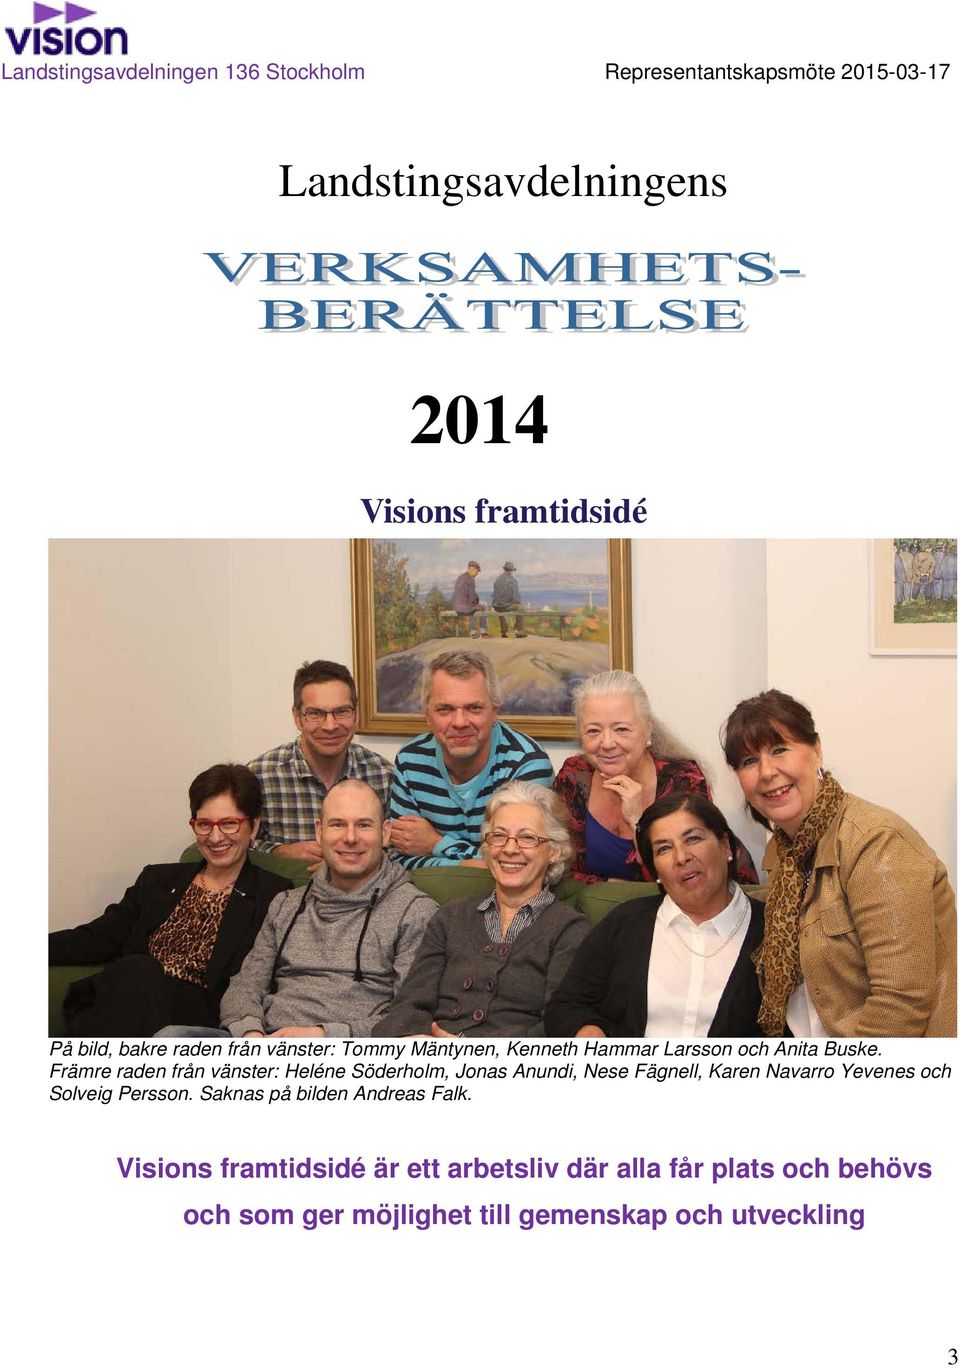 Främre raden från vänster: Heléne Söderholm, Jonas Anundi, Nese Fägnell, Karen Navarro Yevenes och